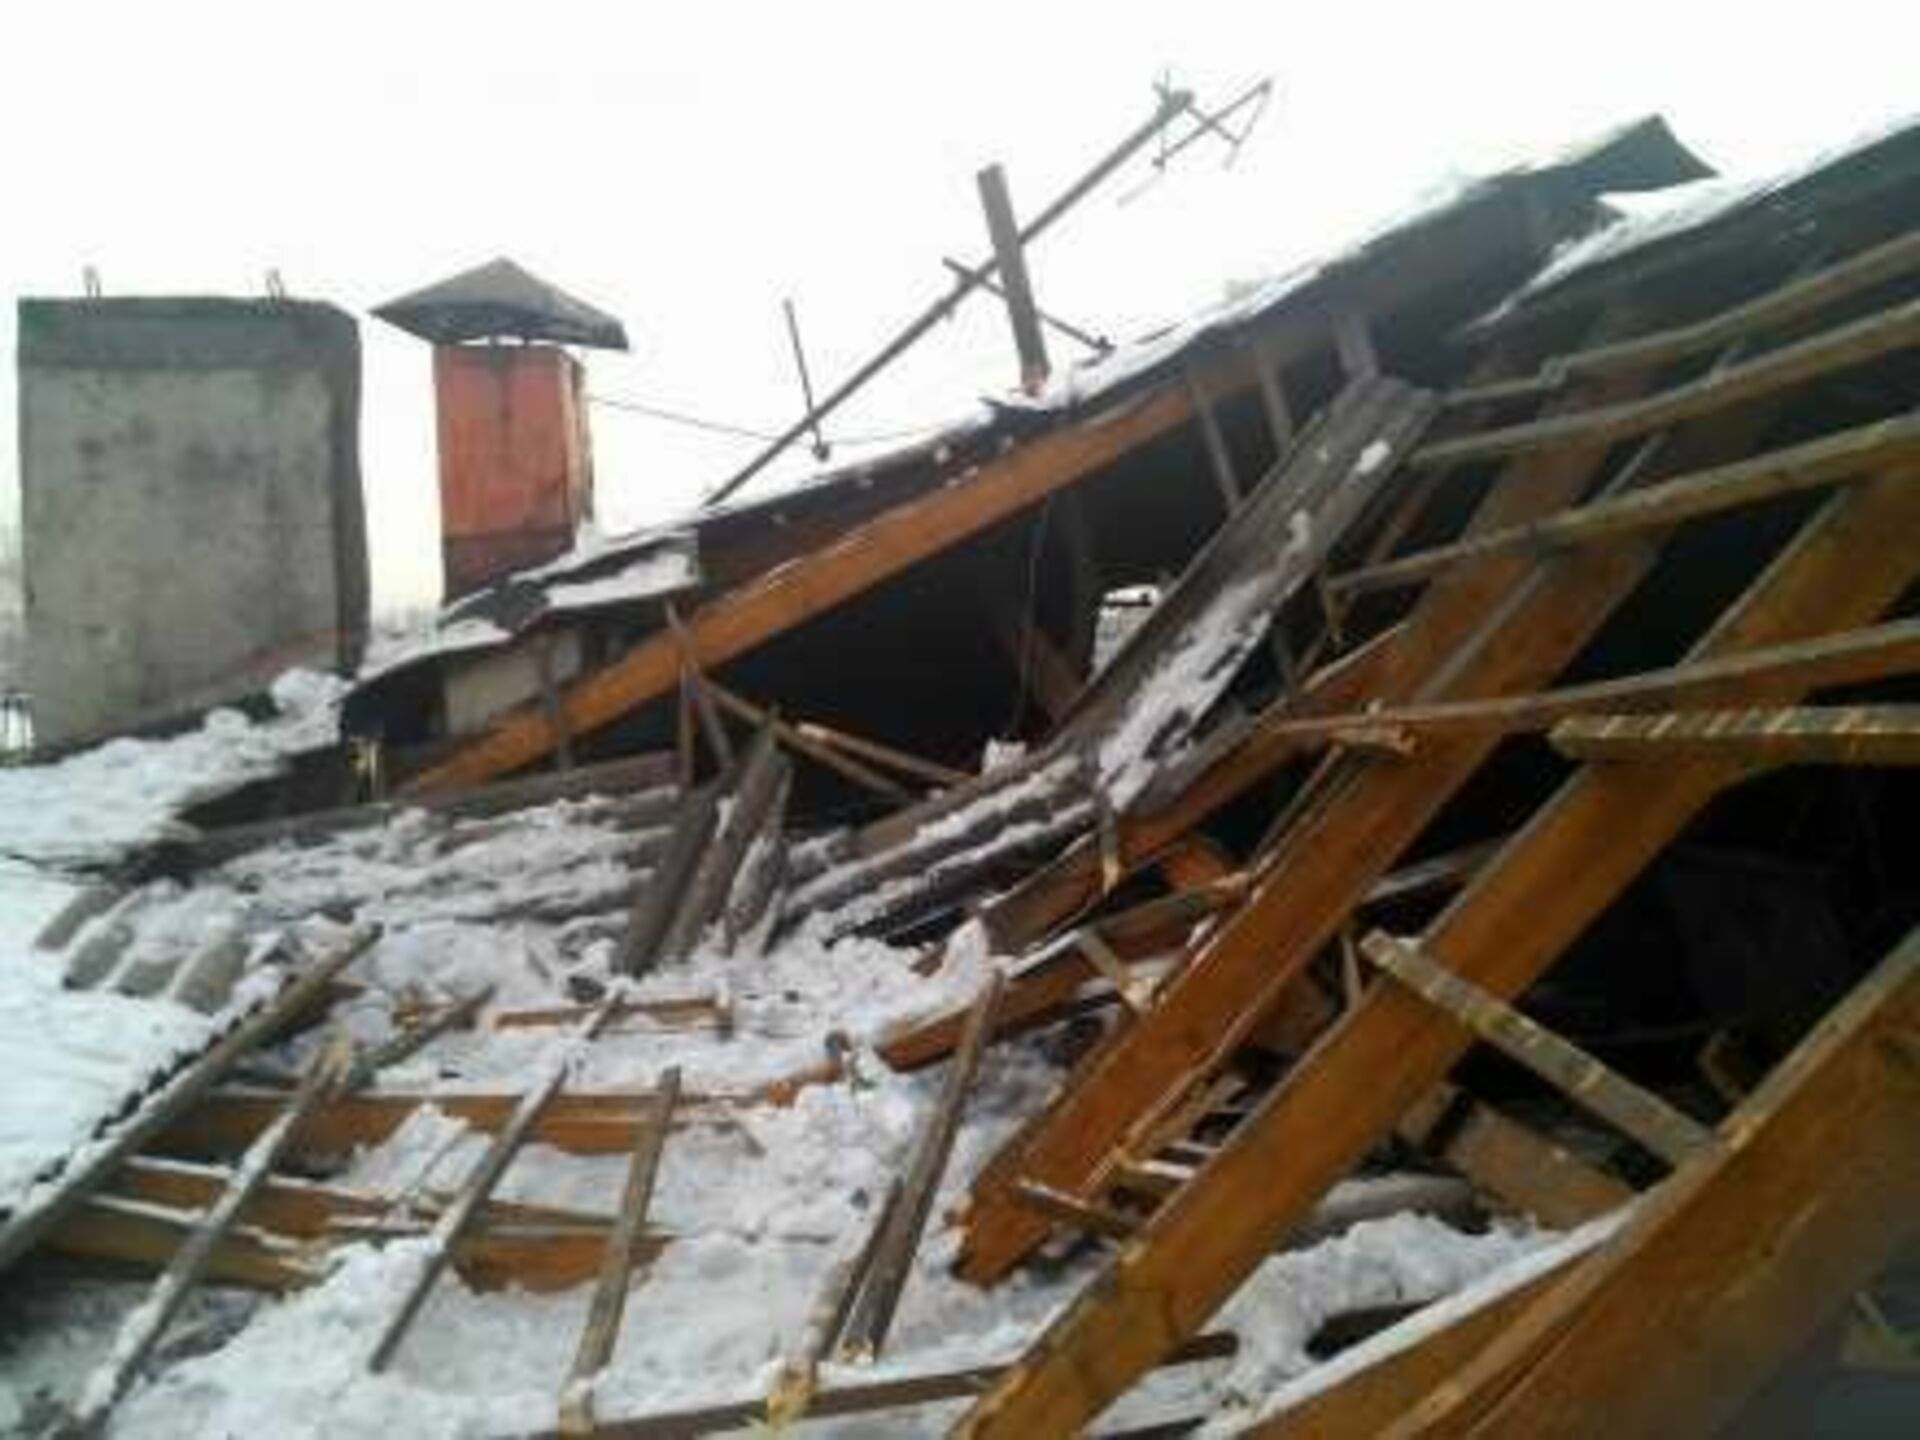 Дома сломанный крышей. Обвалилась крыша в частном дома. Разрушение зданий от снега. Обрушение кровли дома. Обрушение кровли от снега.